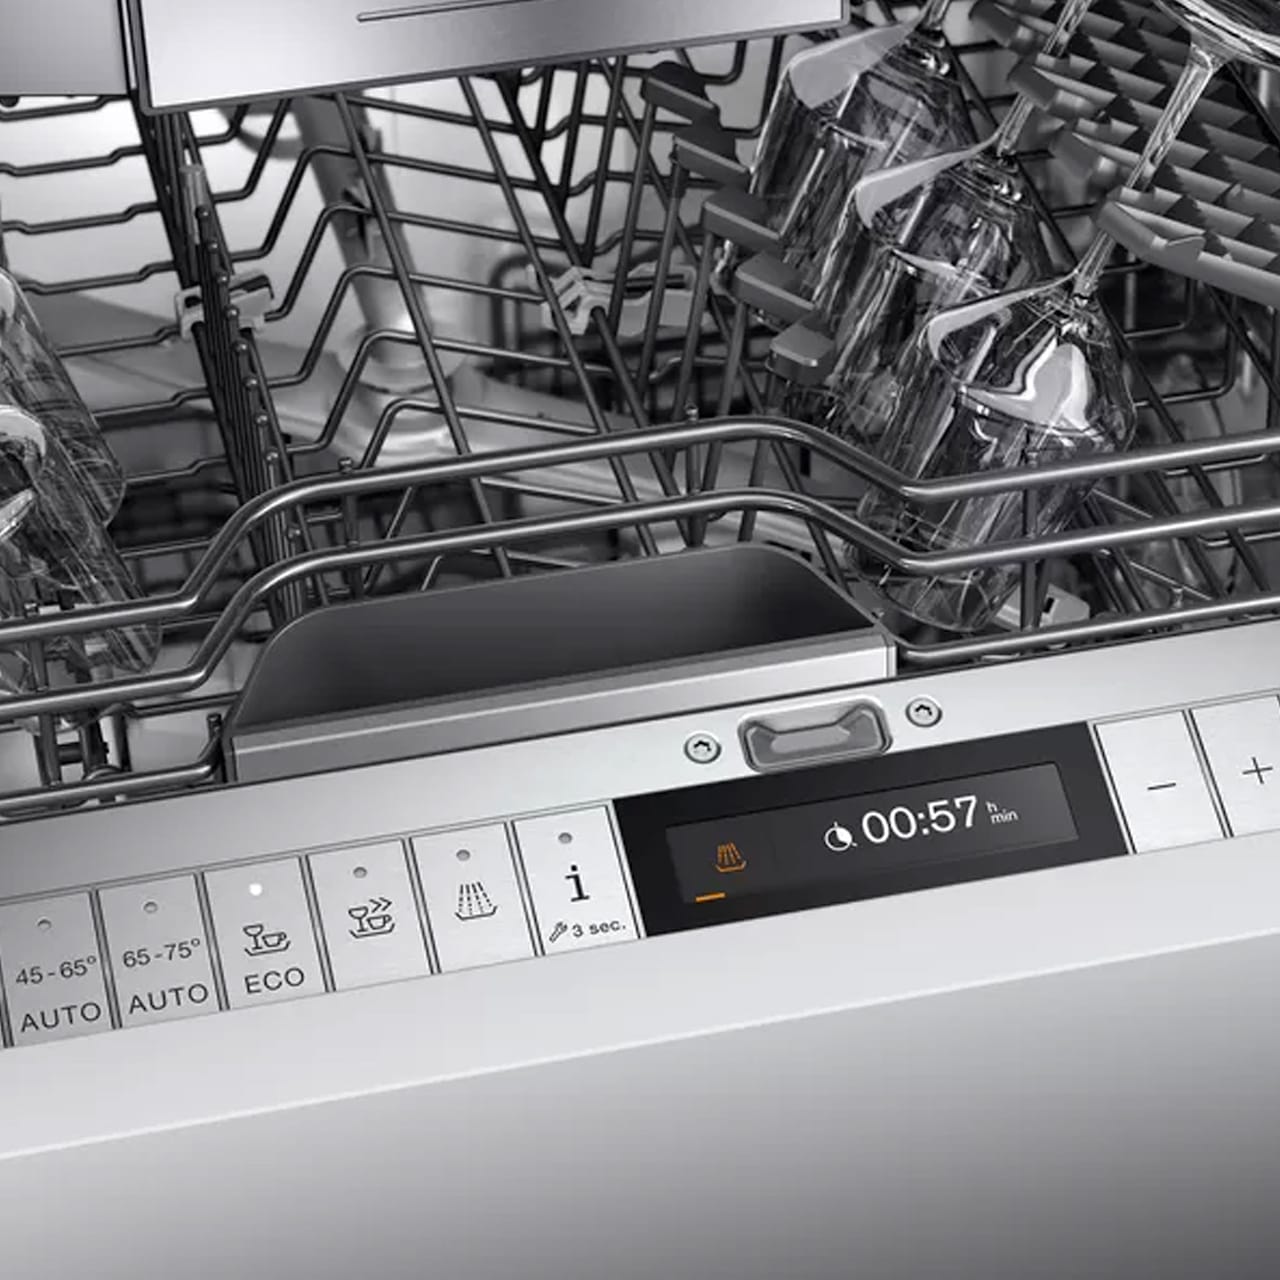 Dishwasher S200 - 45